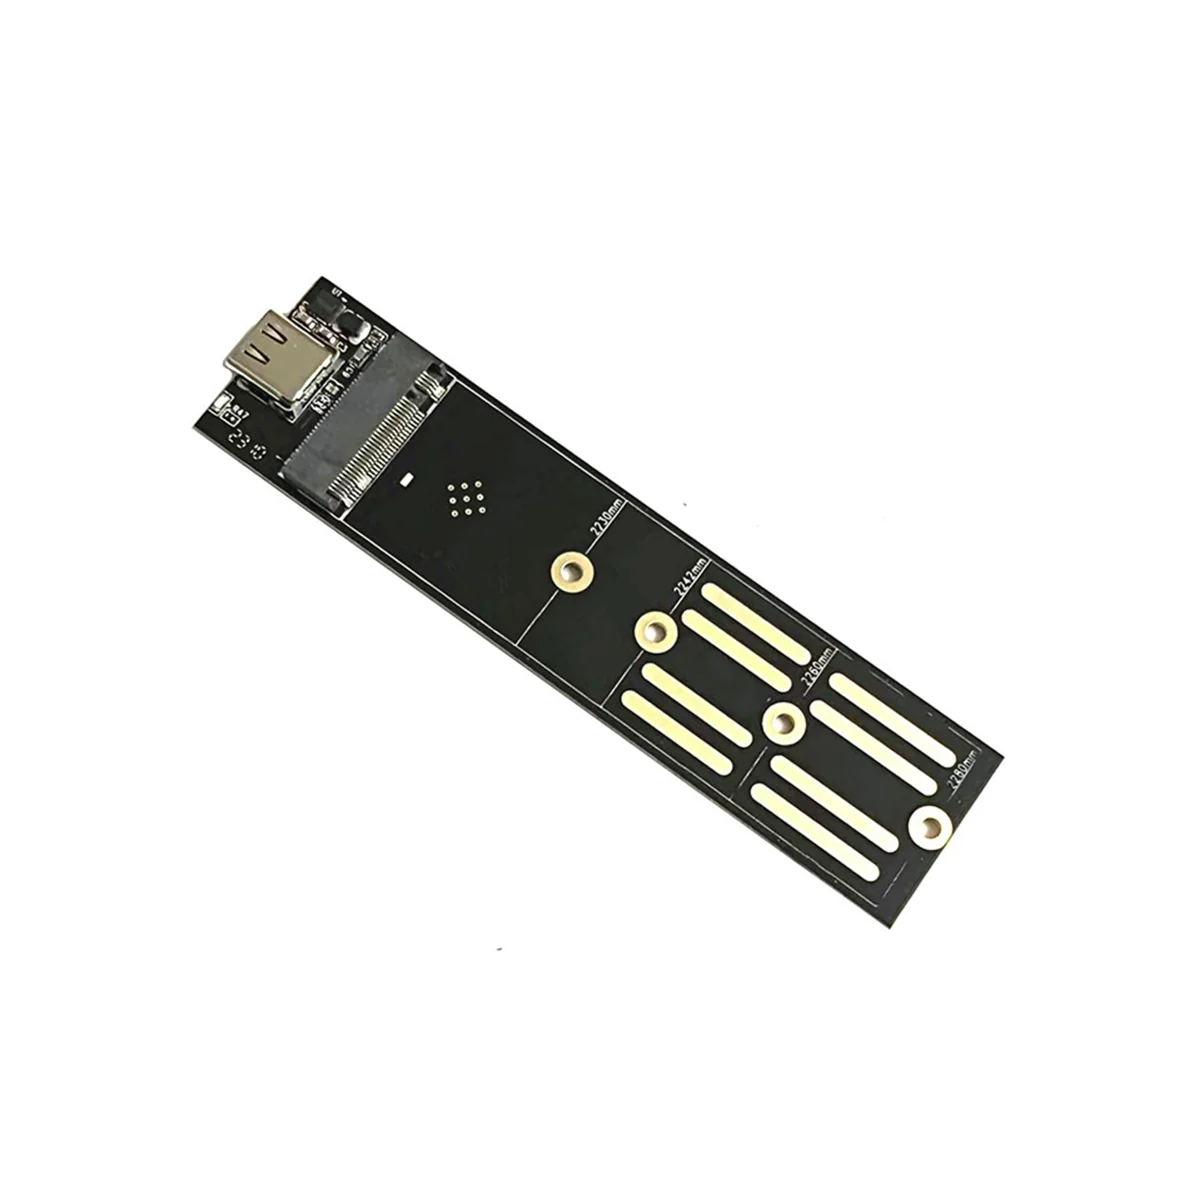 

Адаптер для твердотельного накопителя M2 Nvme/Ngff, двойной протокол к USB 3,1 SATA PCIe, внешний считыватель, адаптер, карта